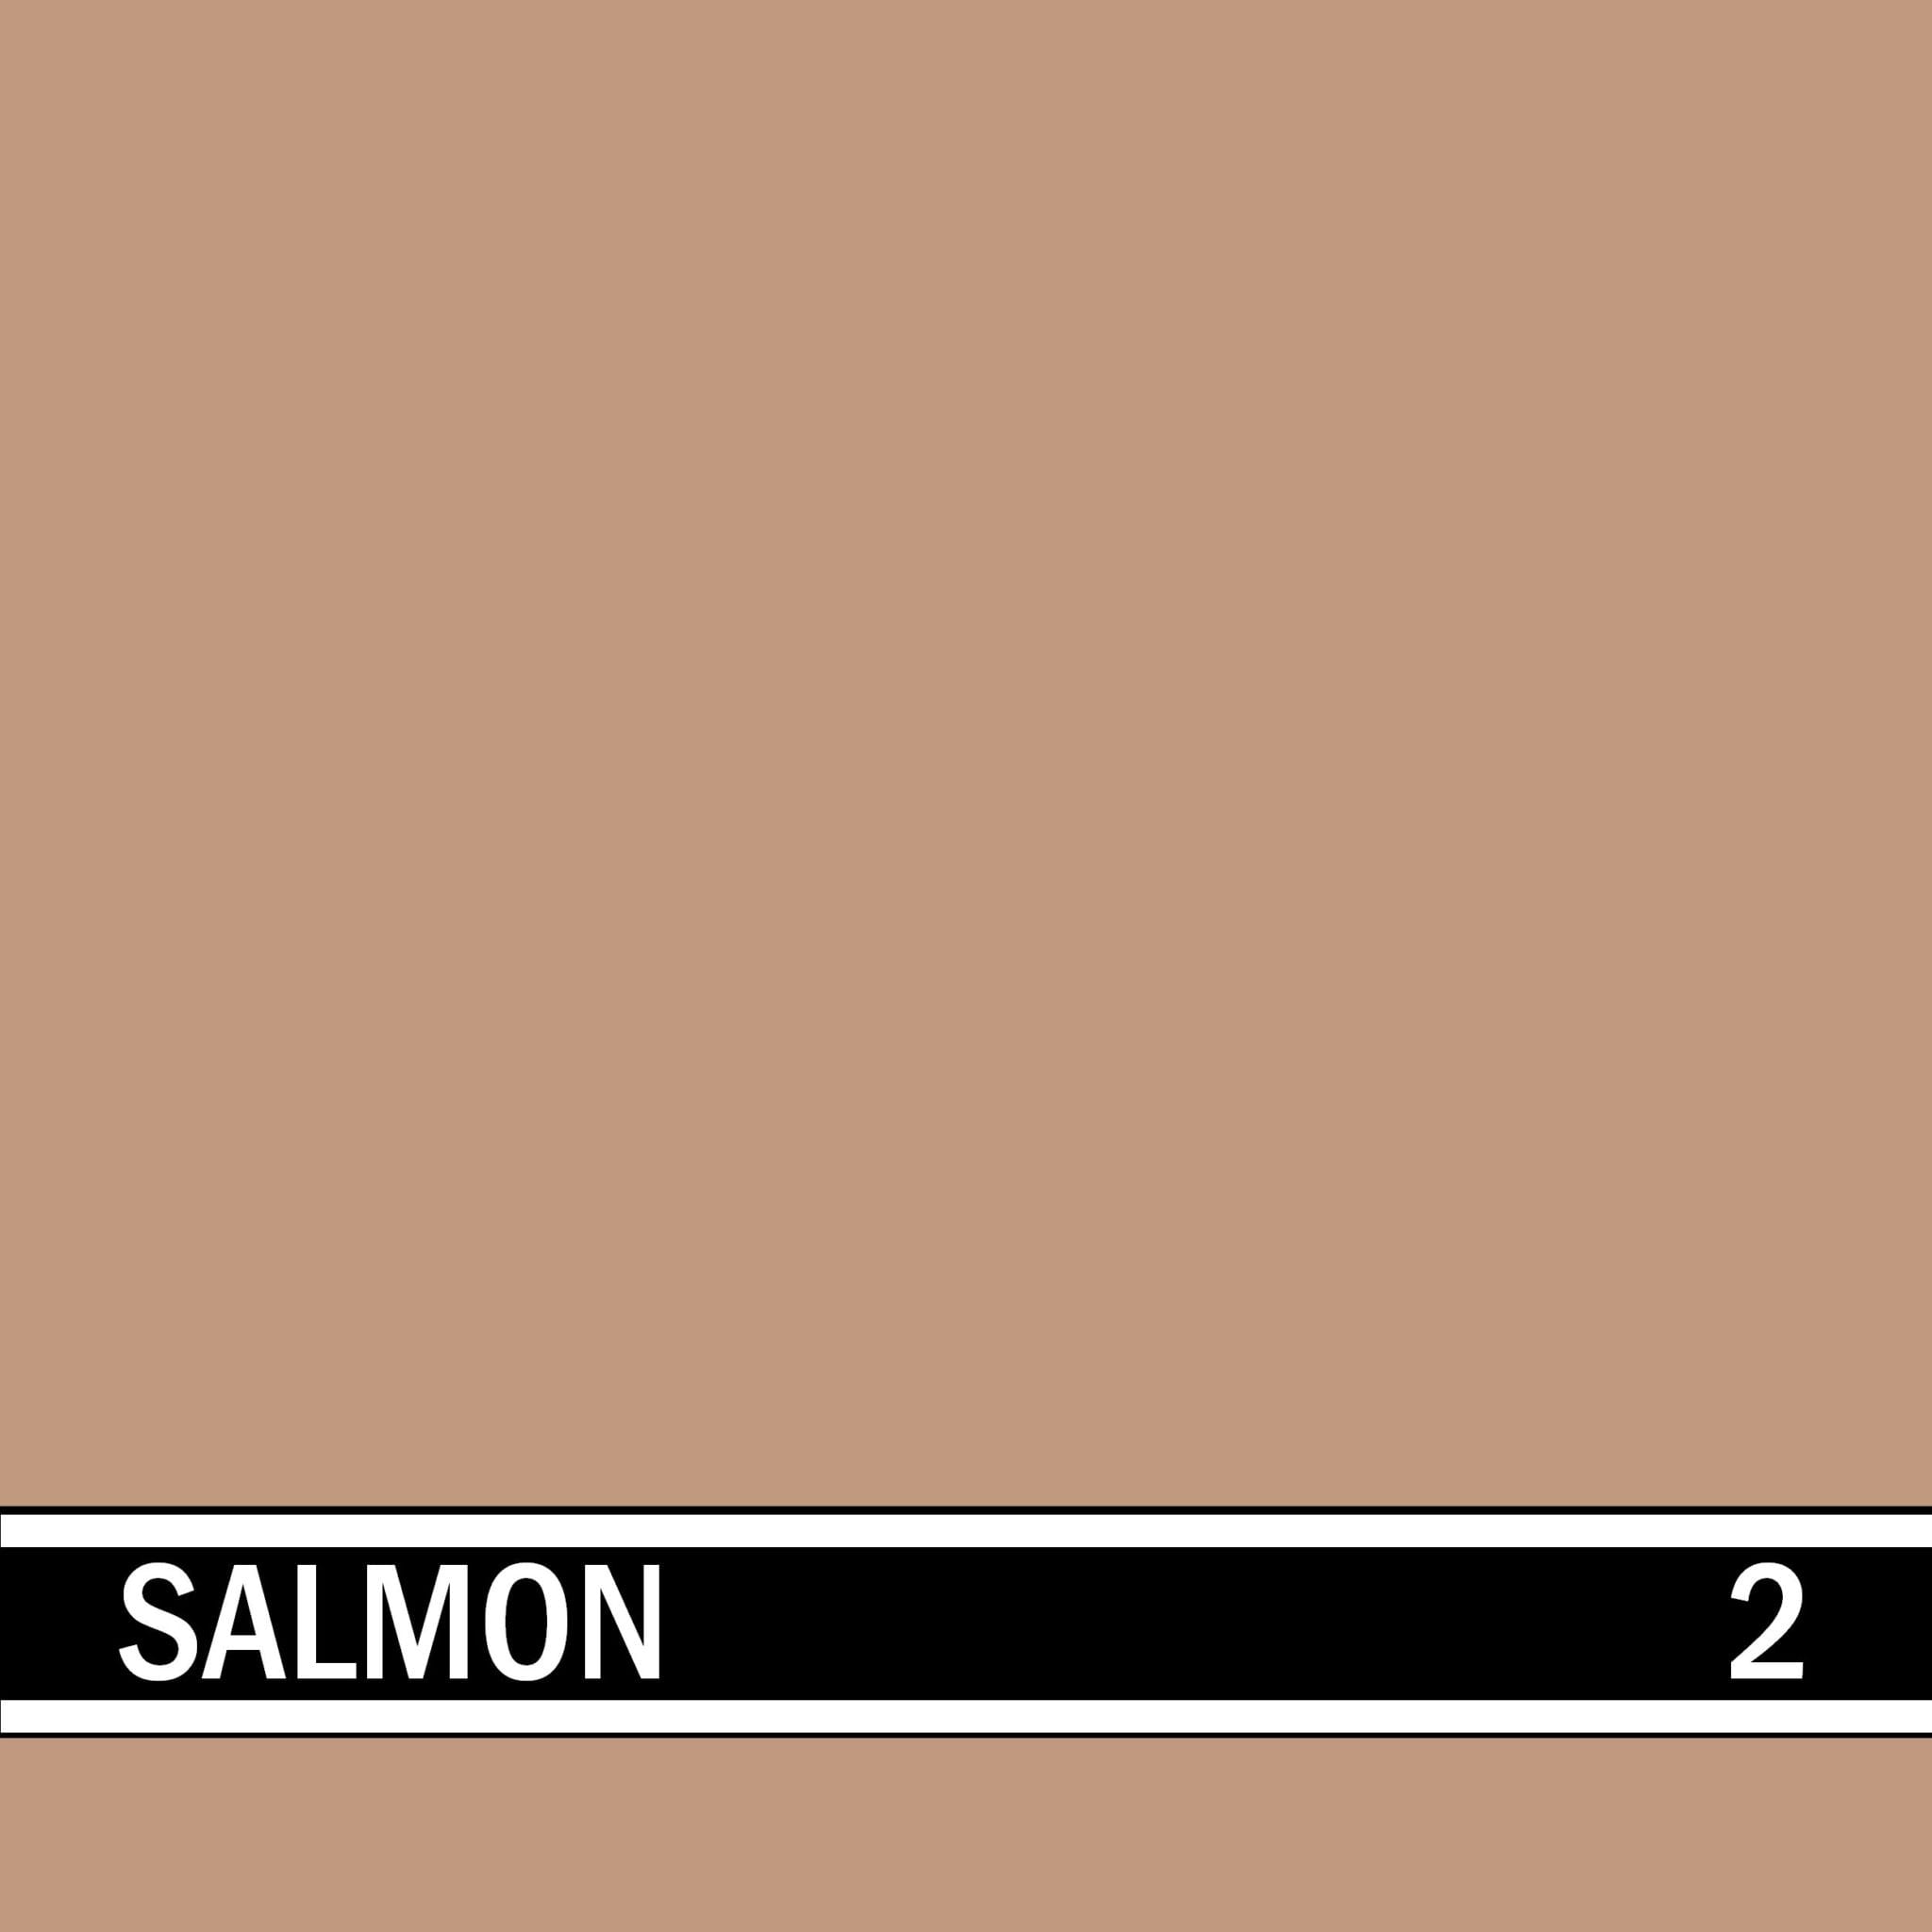 Salmon integral concrete color for stamped concrete and decorative colored concrete